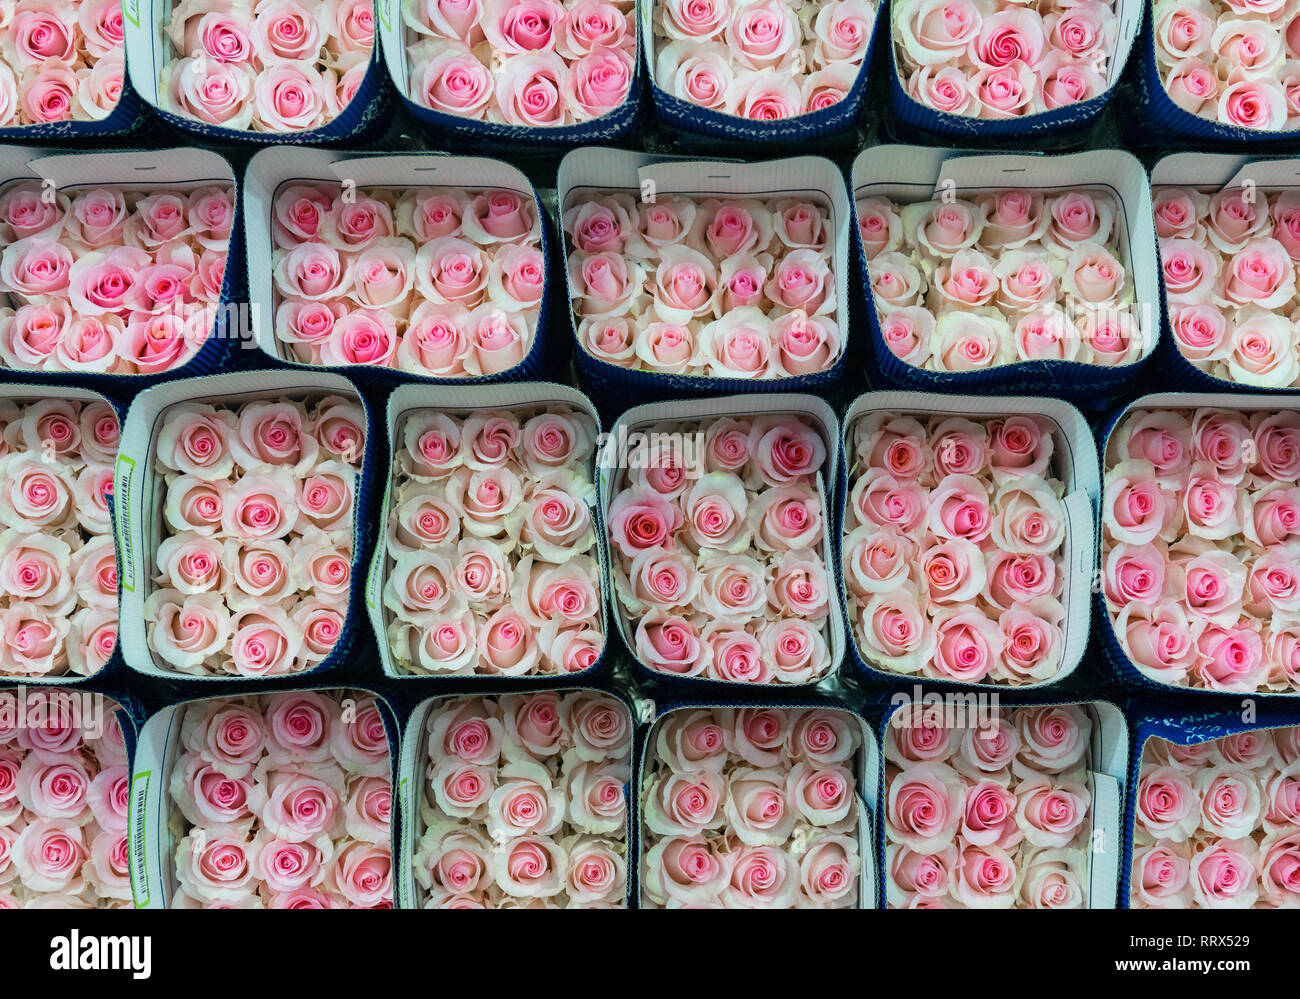 Rosas rosas empaquetado para la exportación internacional. Las rosas son producidos en Tabacundo y Cayambe, al norte de Quito, Ecuador. Foto de stock